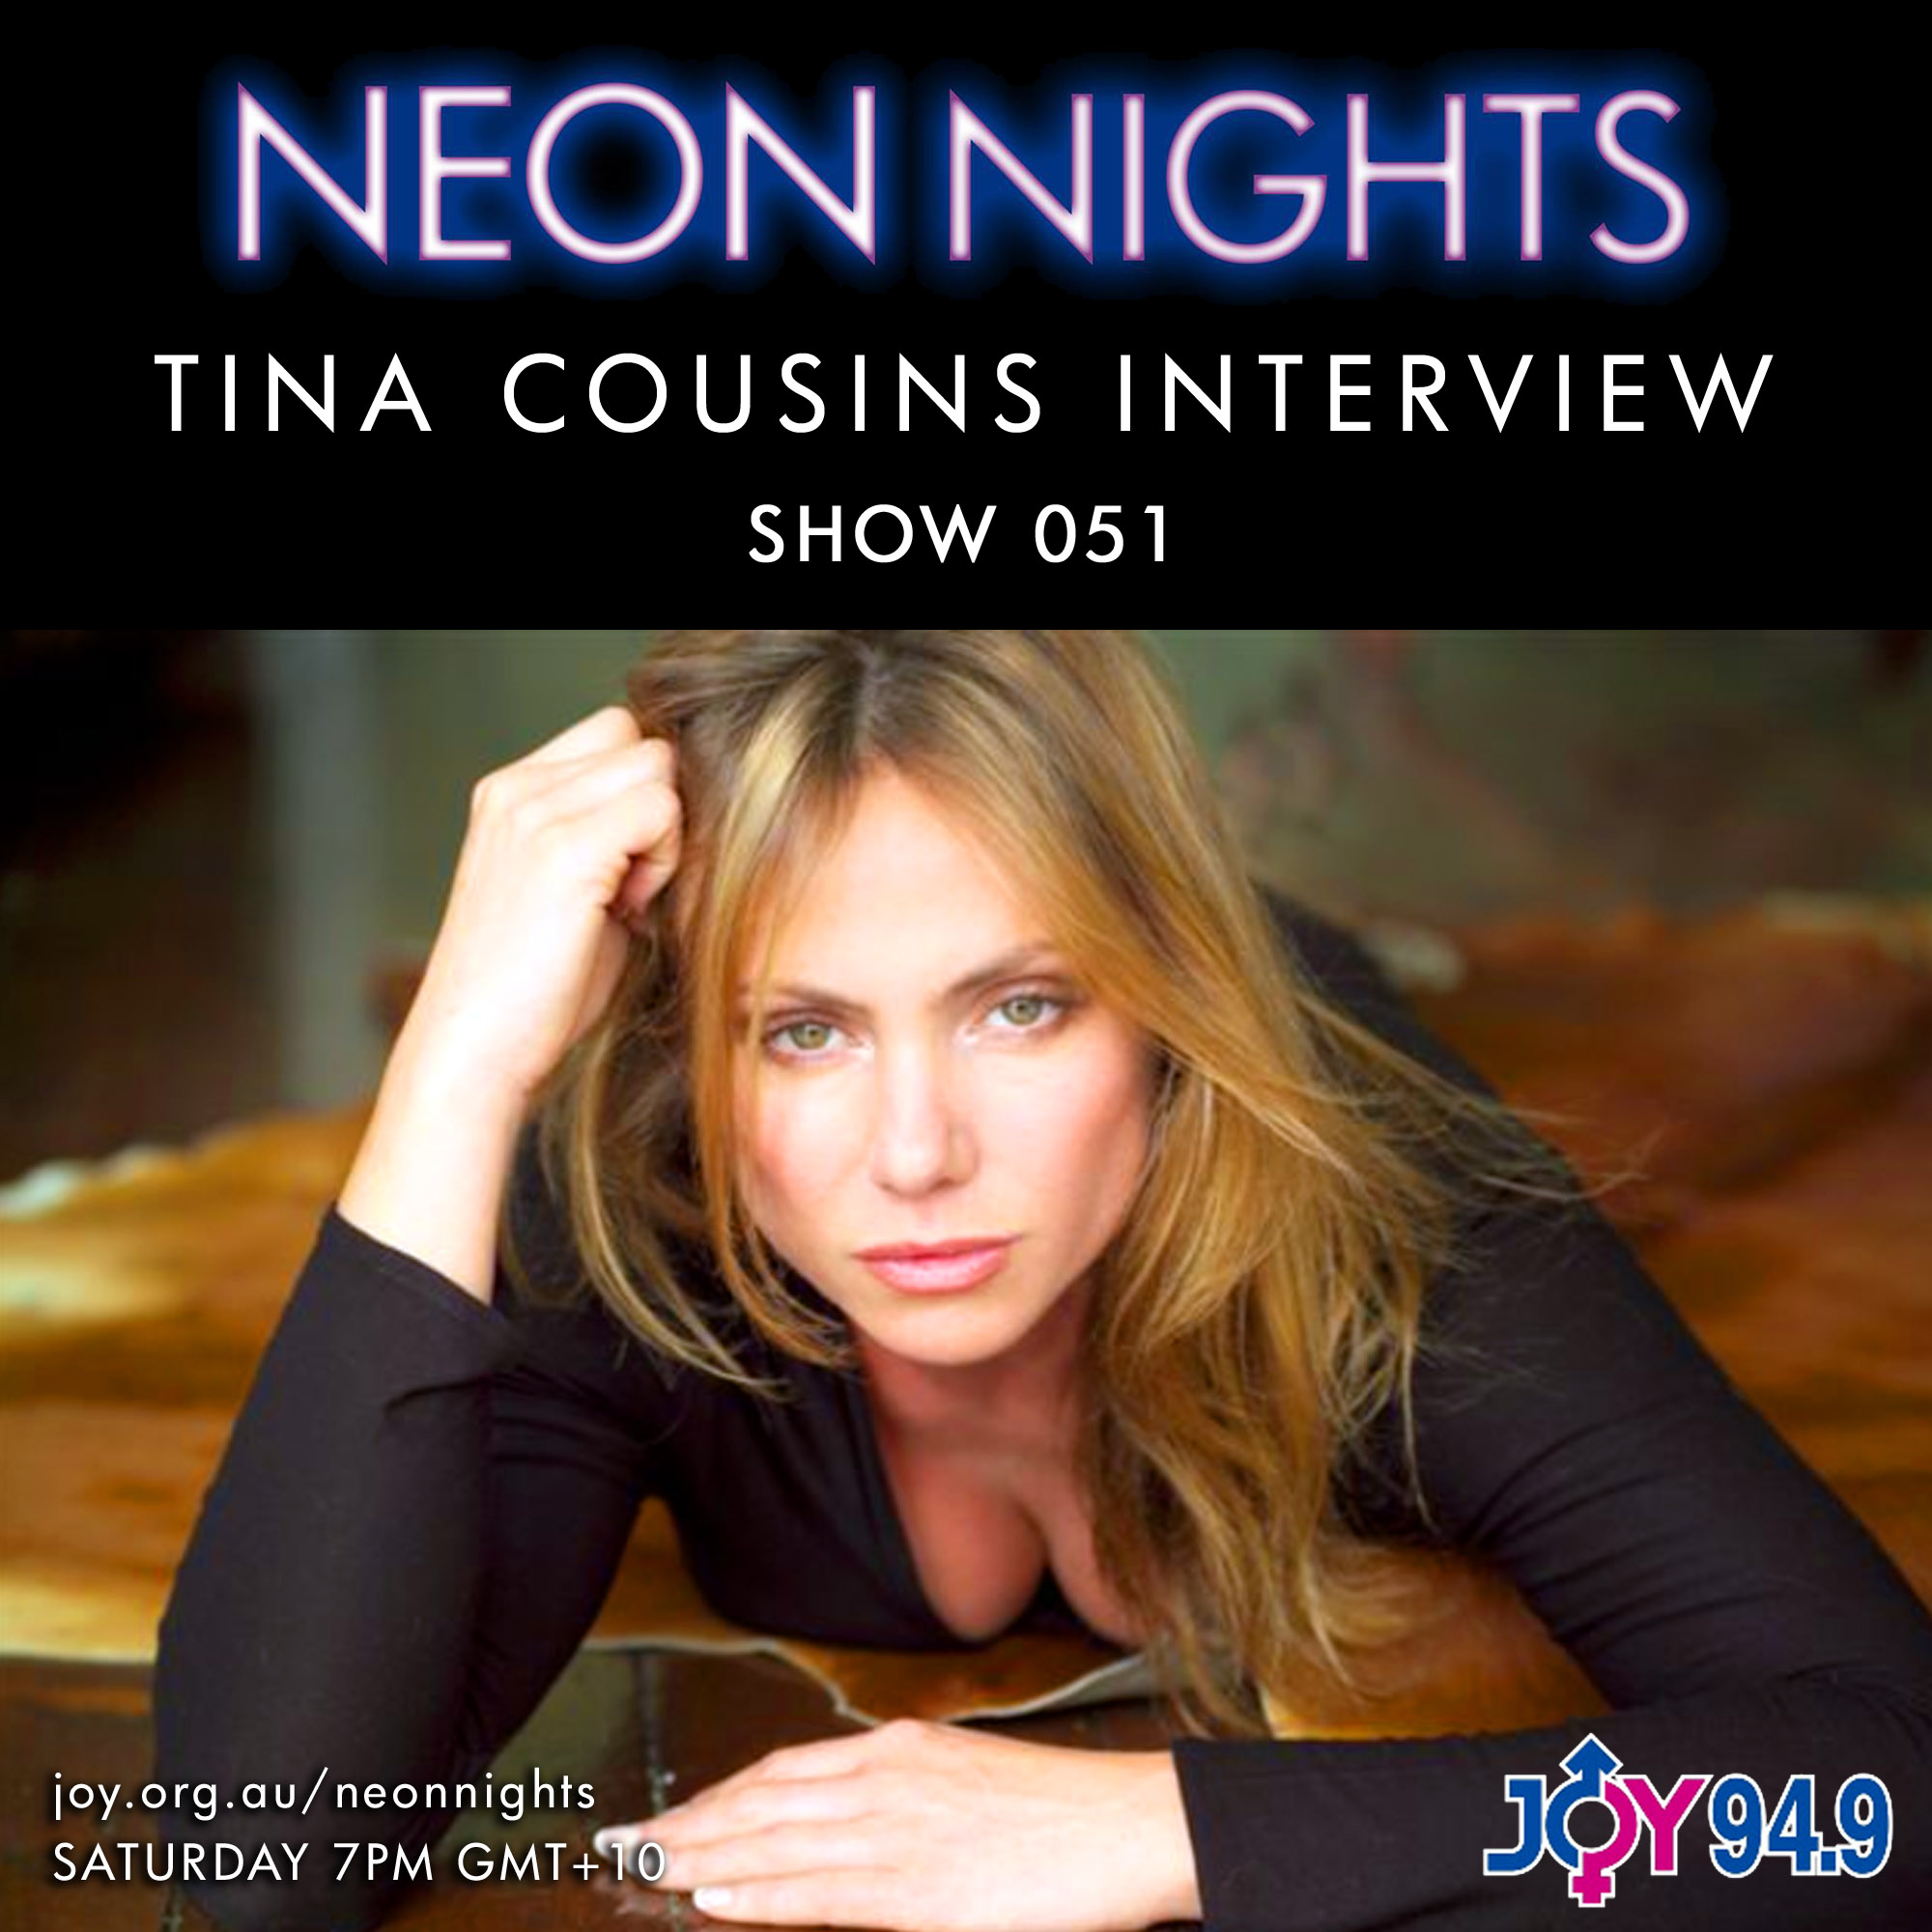 Show 051 – Tina Cousins Interviewed by John von Ahlen